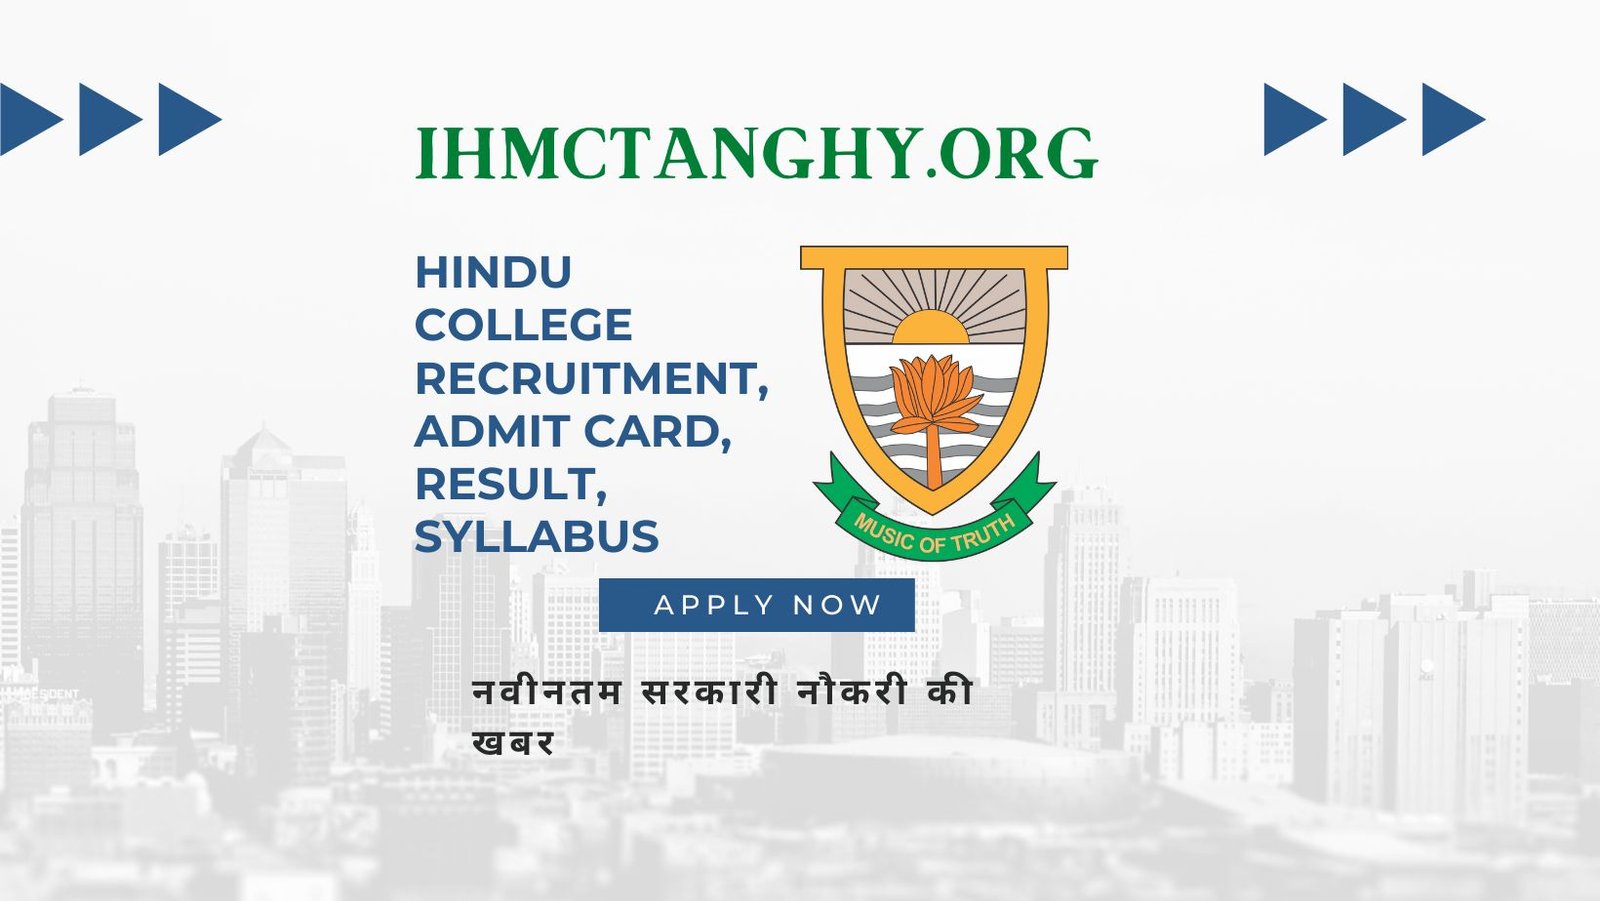 Hindu College Recruitment